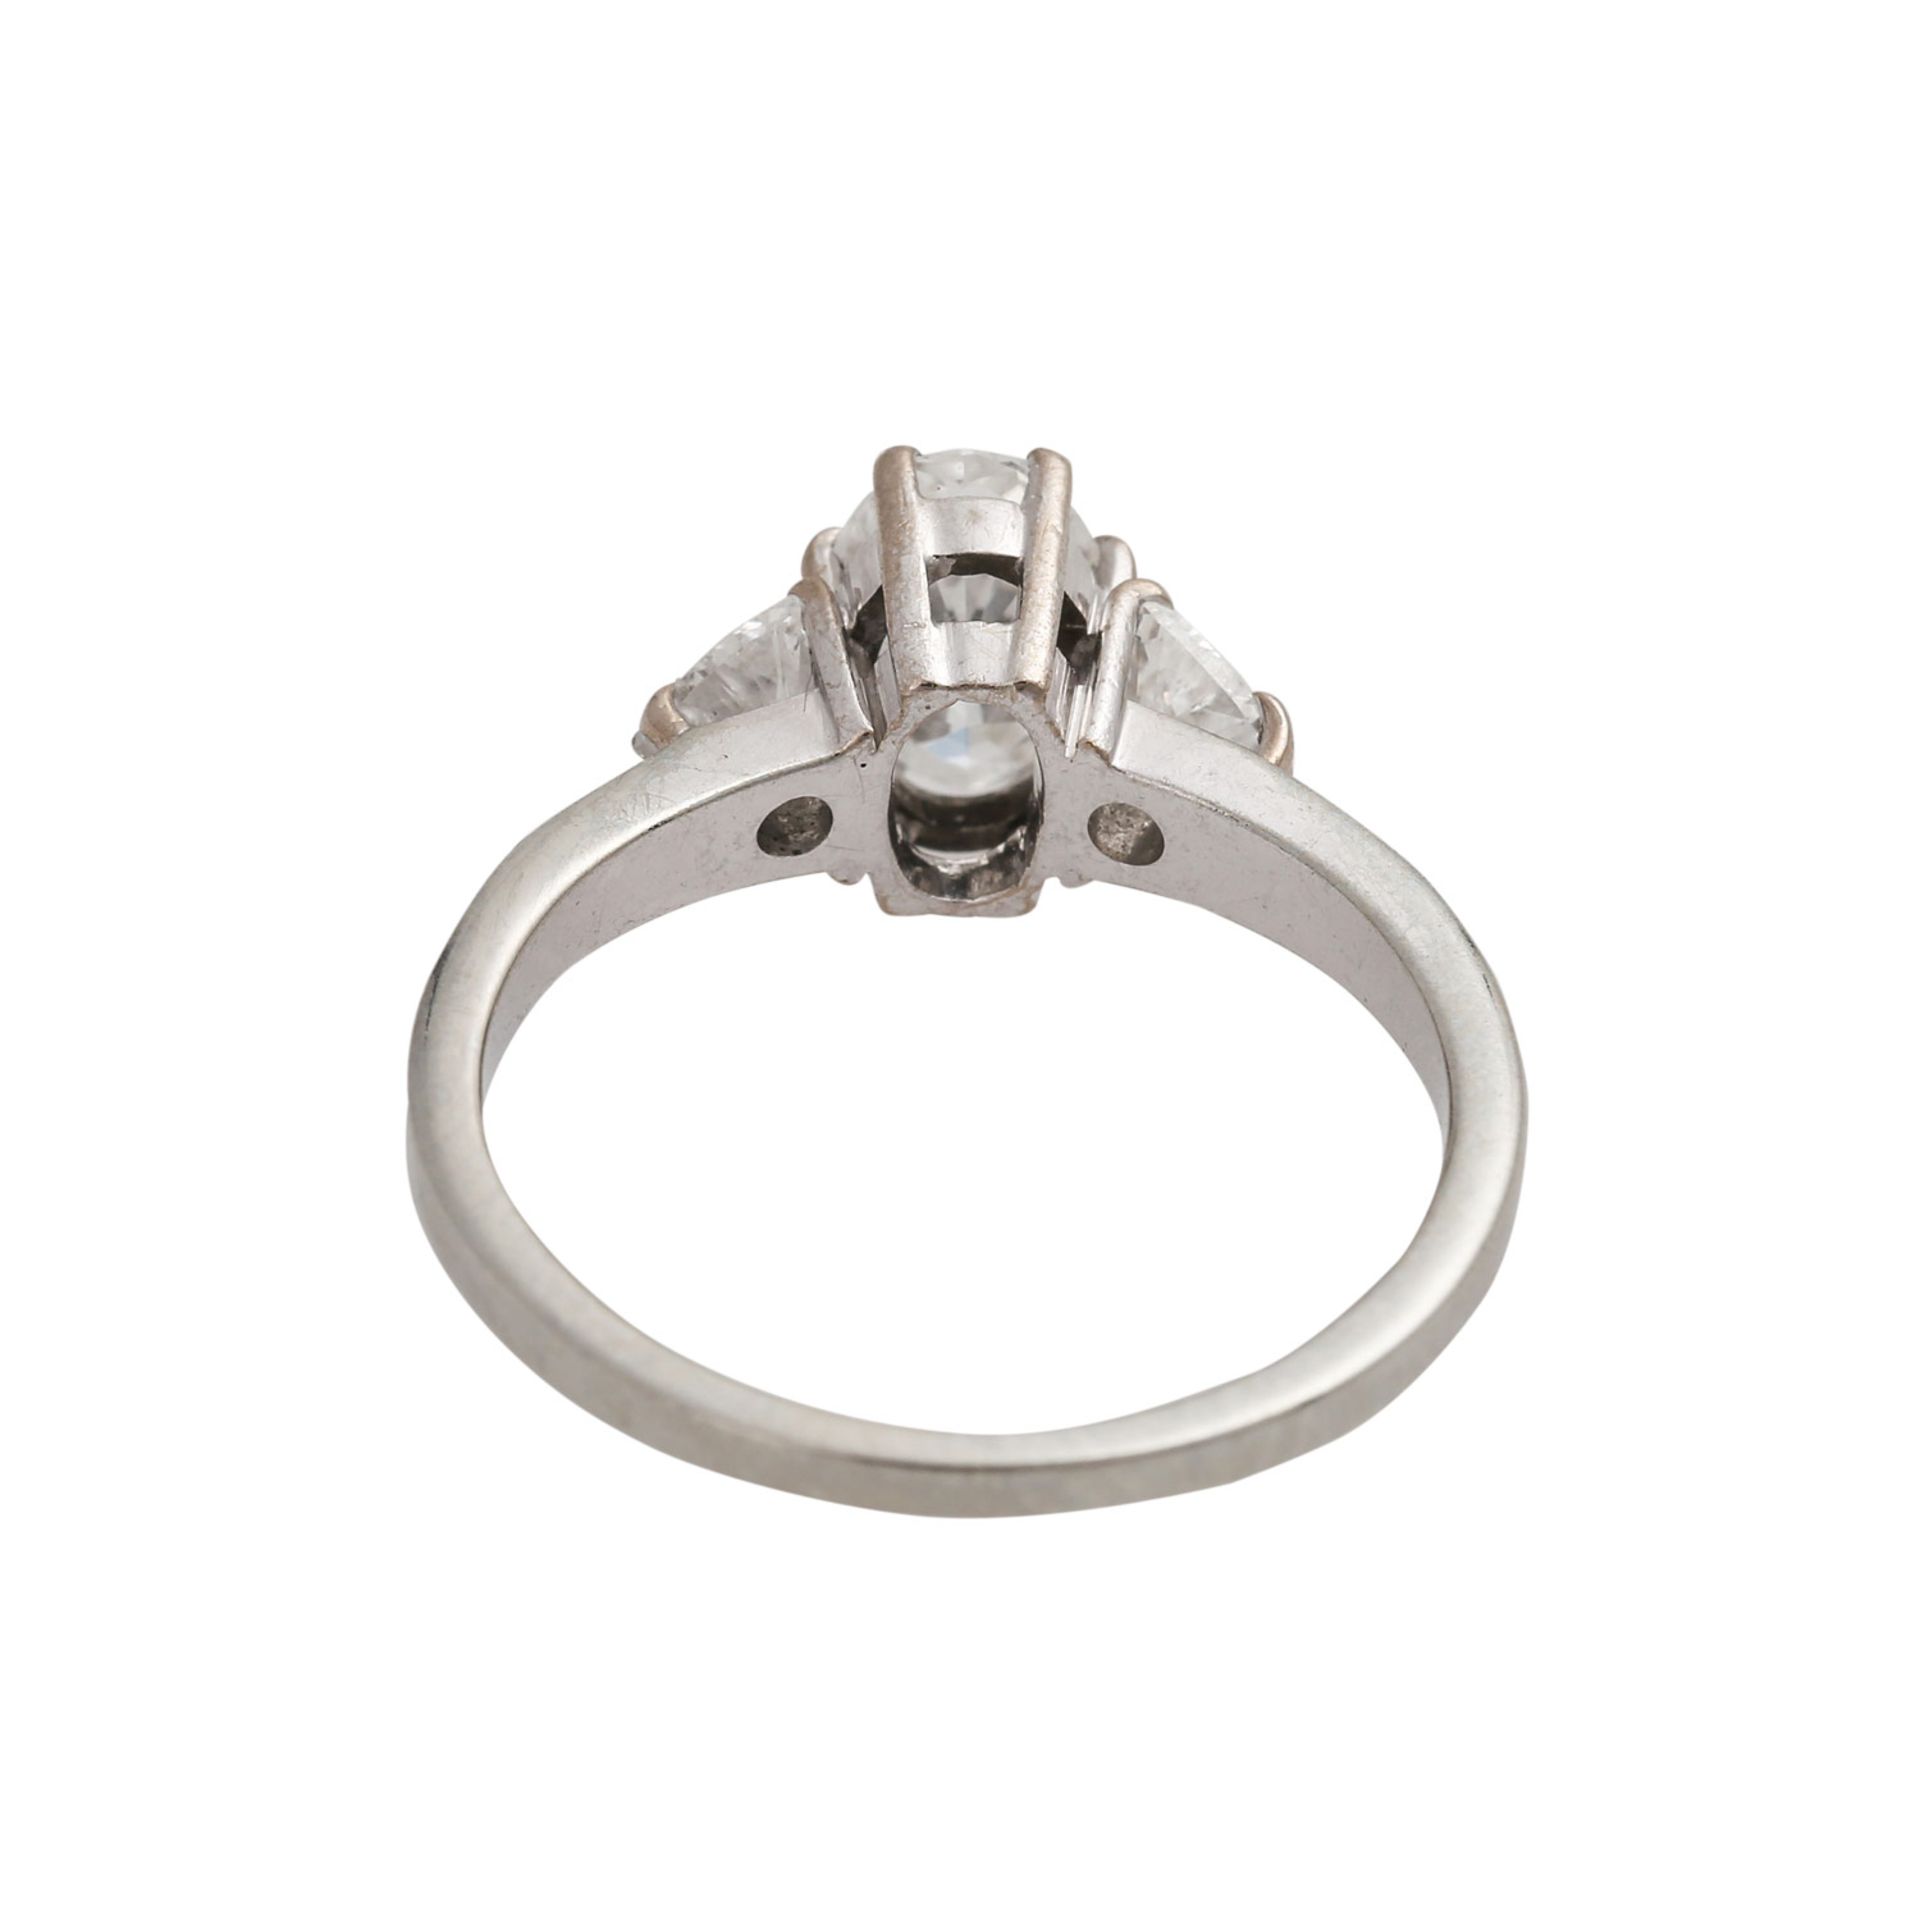 Ring mit ovalem Brillante ca. 0,65 ctund 2 Diamanten im Triangelschliff von zus. ca. 0,3 ct, alle - Bild 4 aus 4